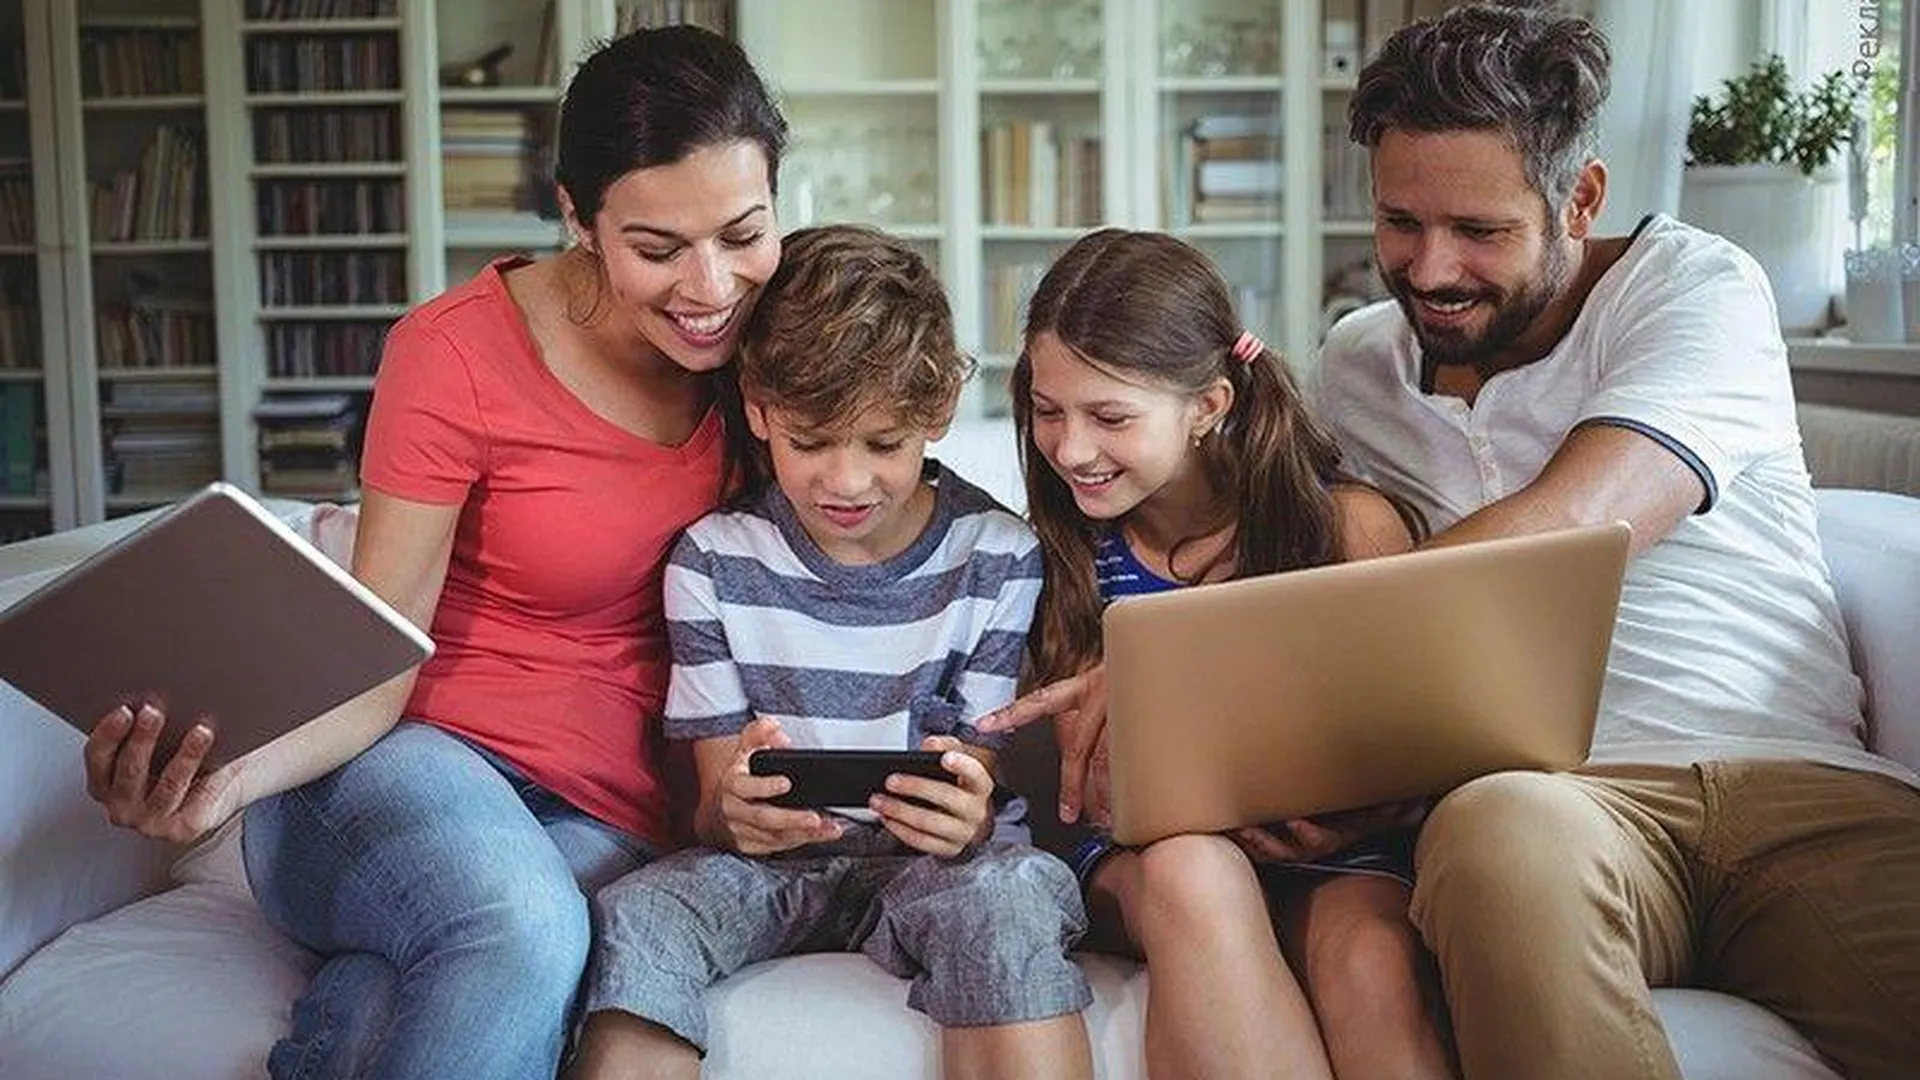 Аналитики подсчитали, сколько времени проводят в интернете подмосковные семьи